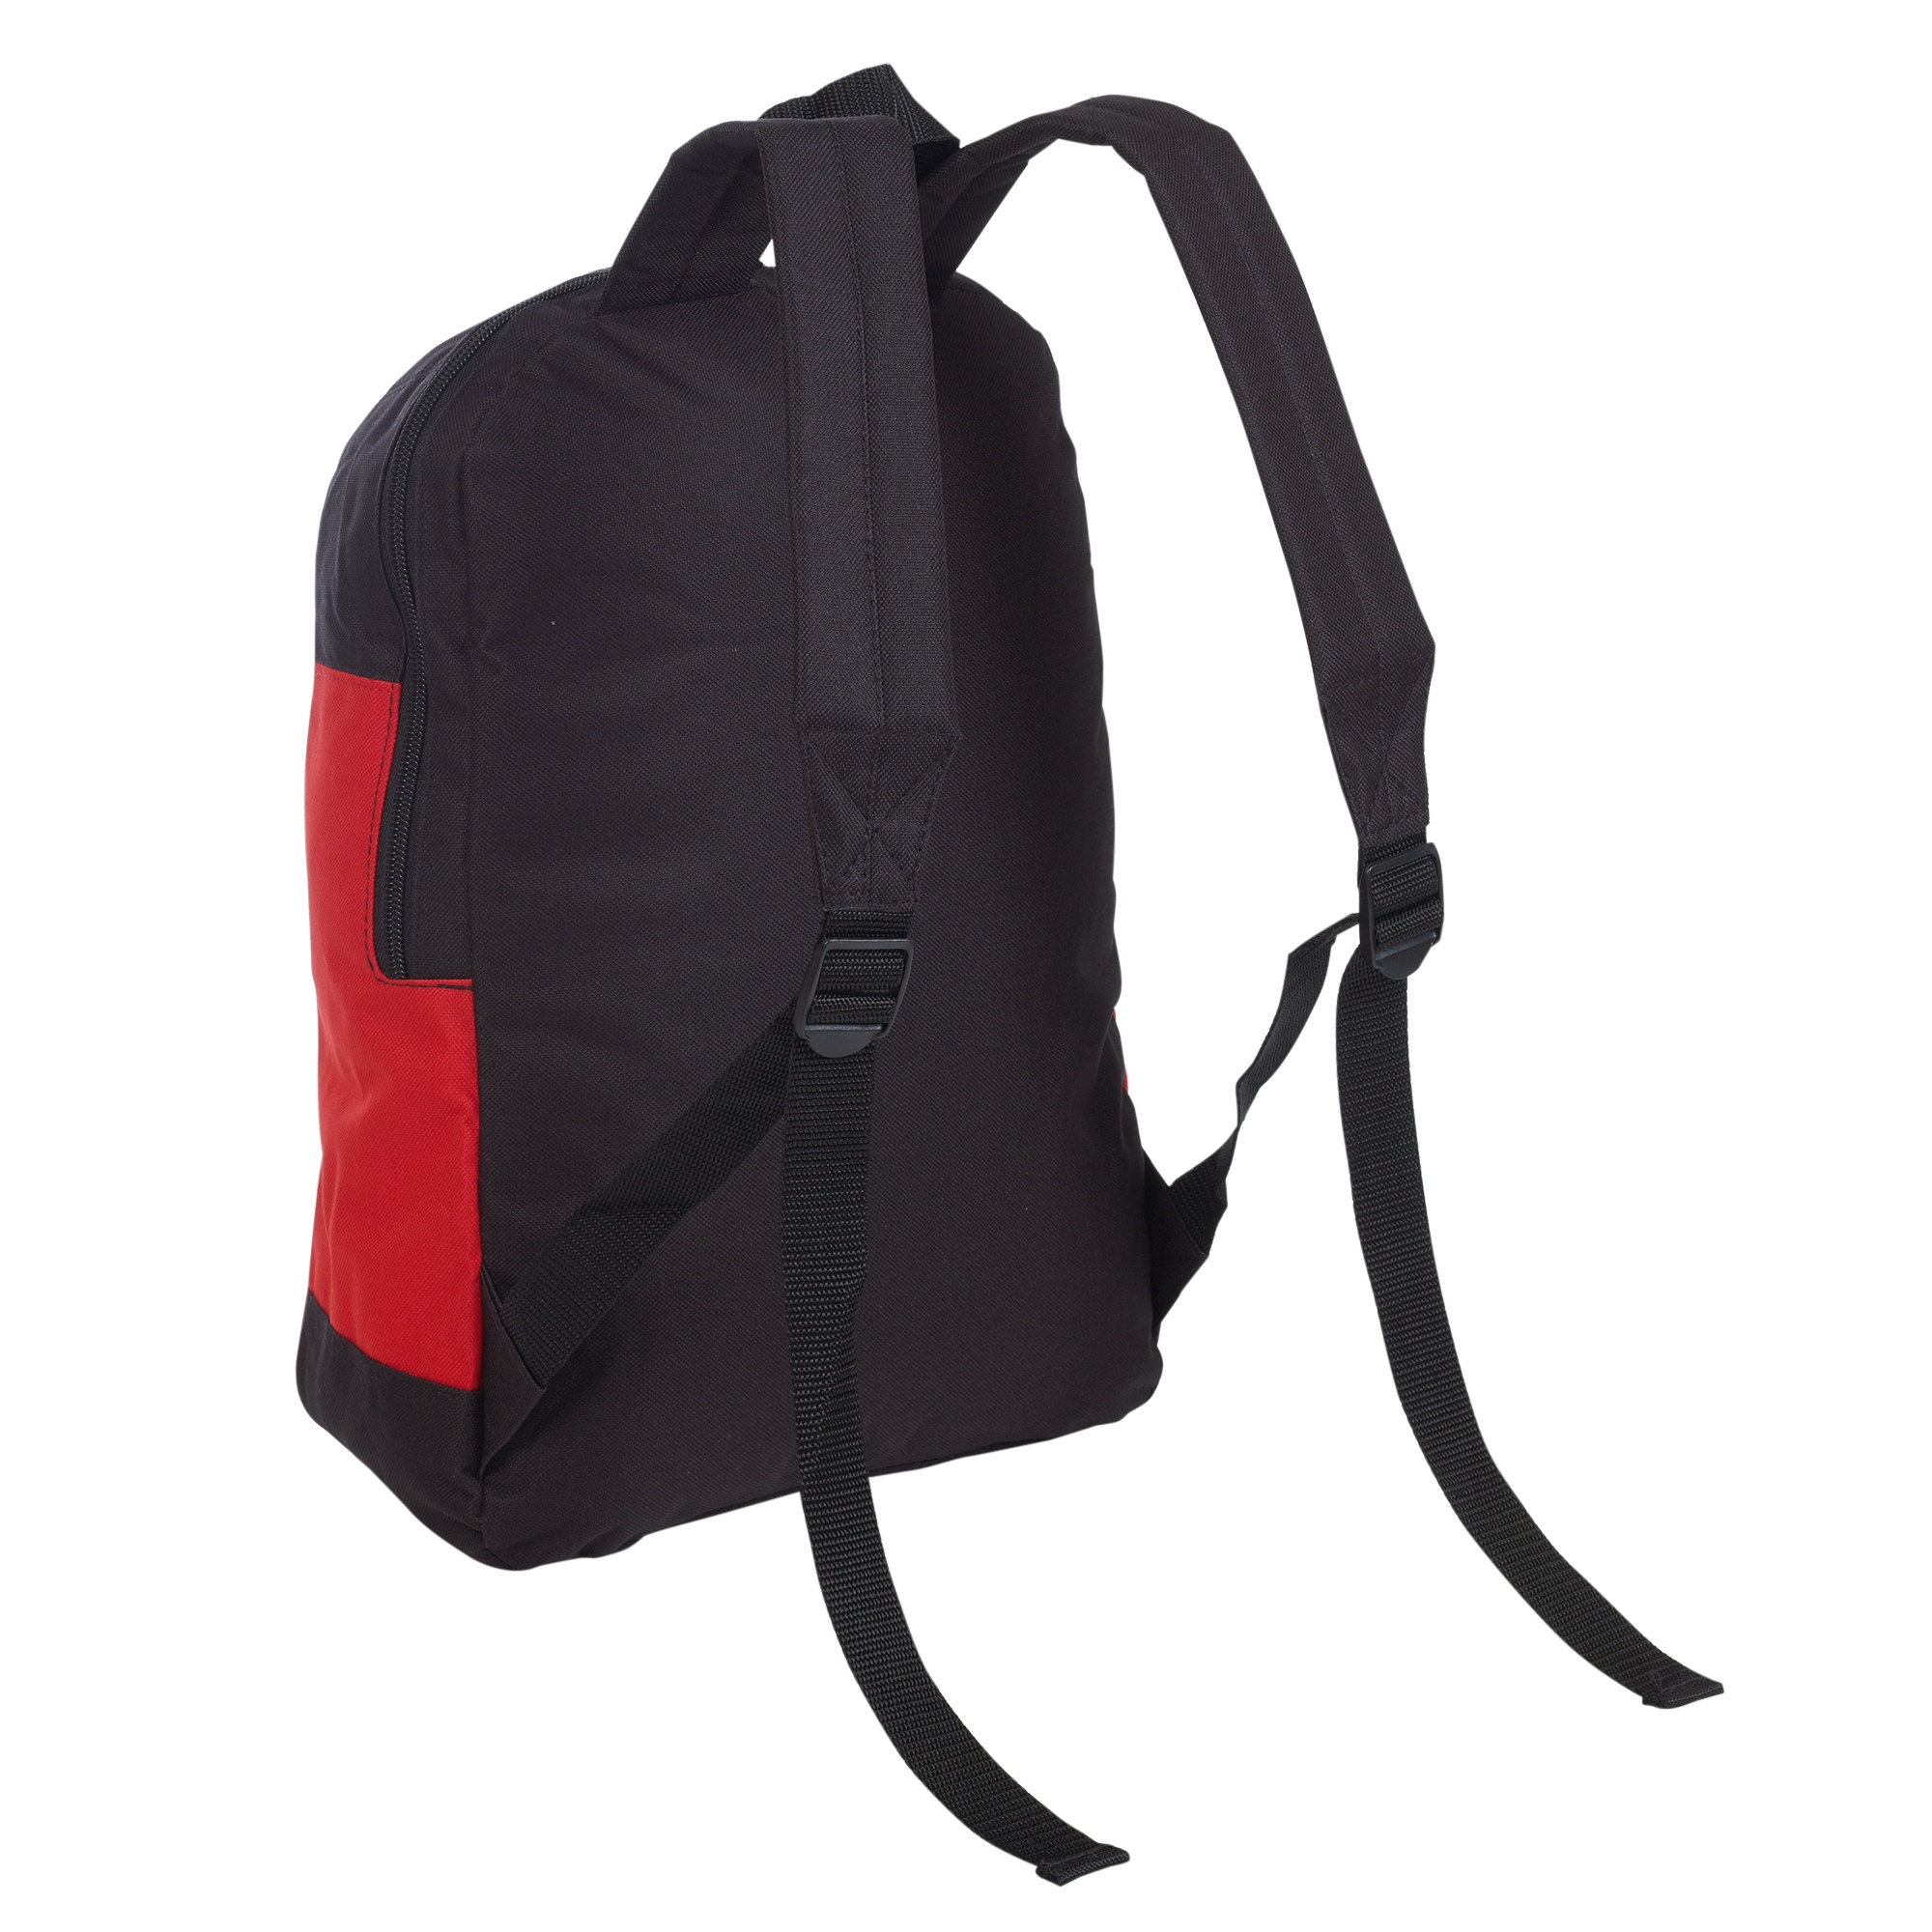 Rainproof Padded Backpack Rucksack School Travel Bag Adjustable Shoulder Strap | eBay